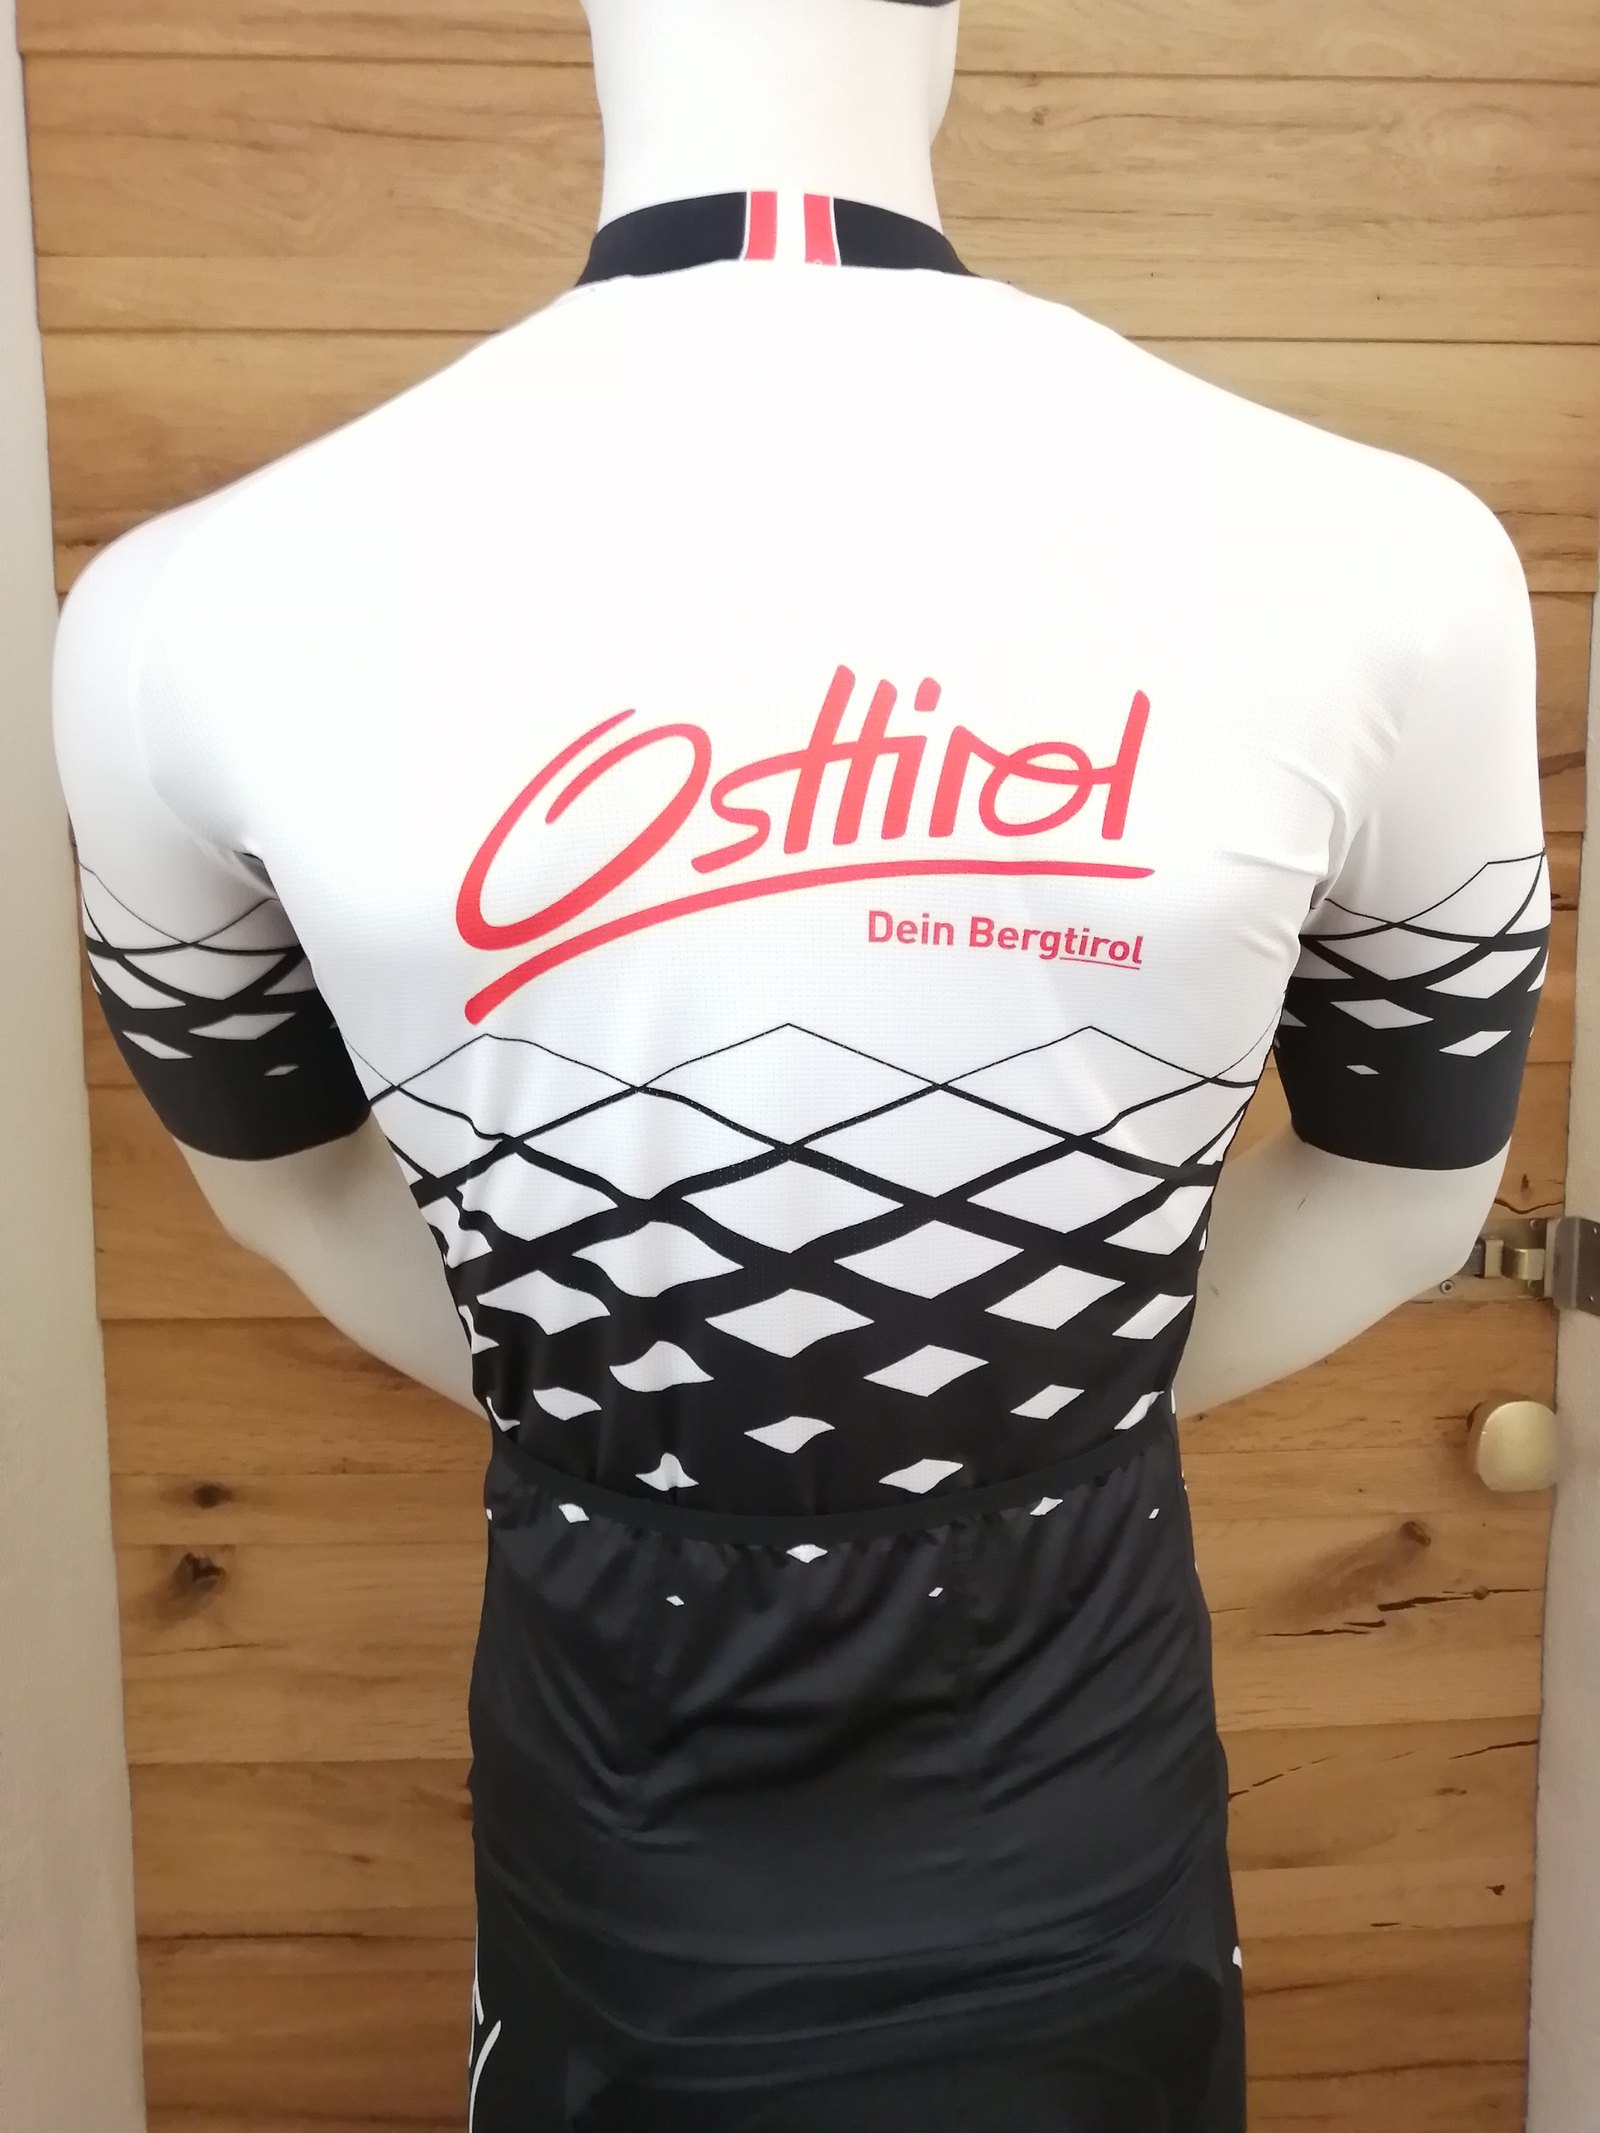 Rad Trikot "Osttirol" weiß